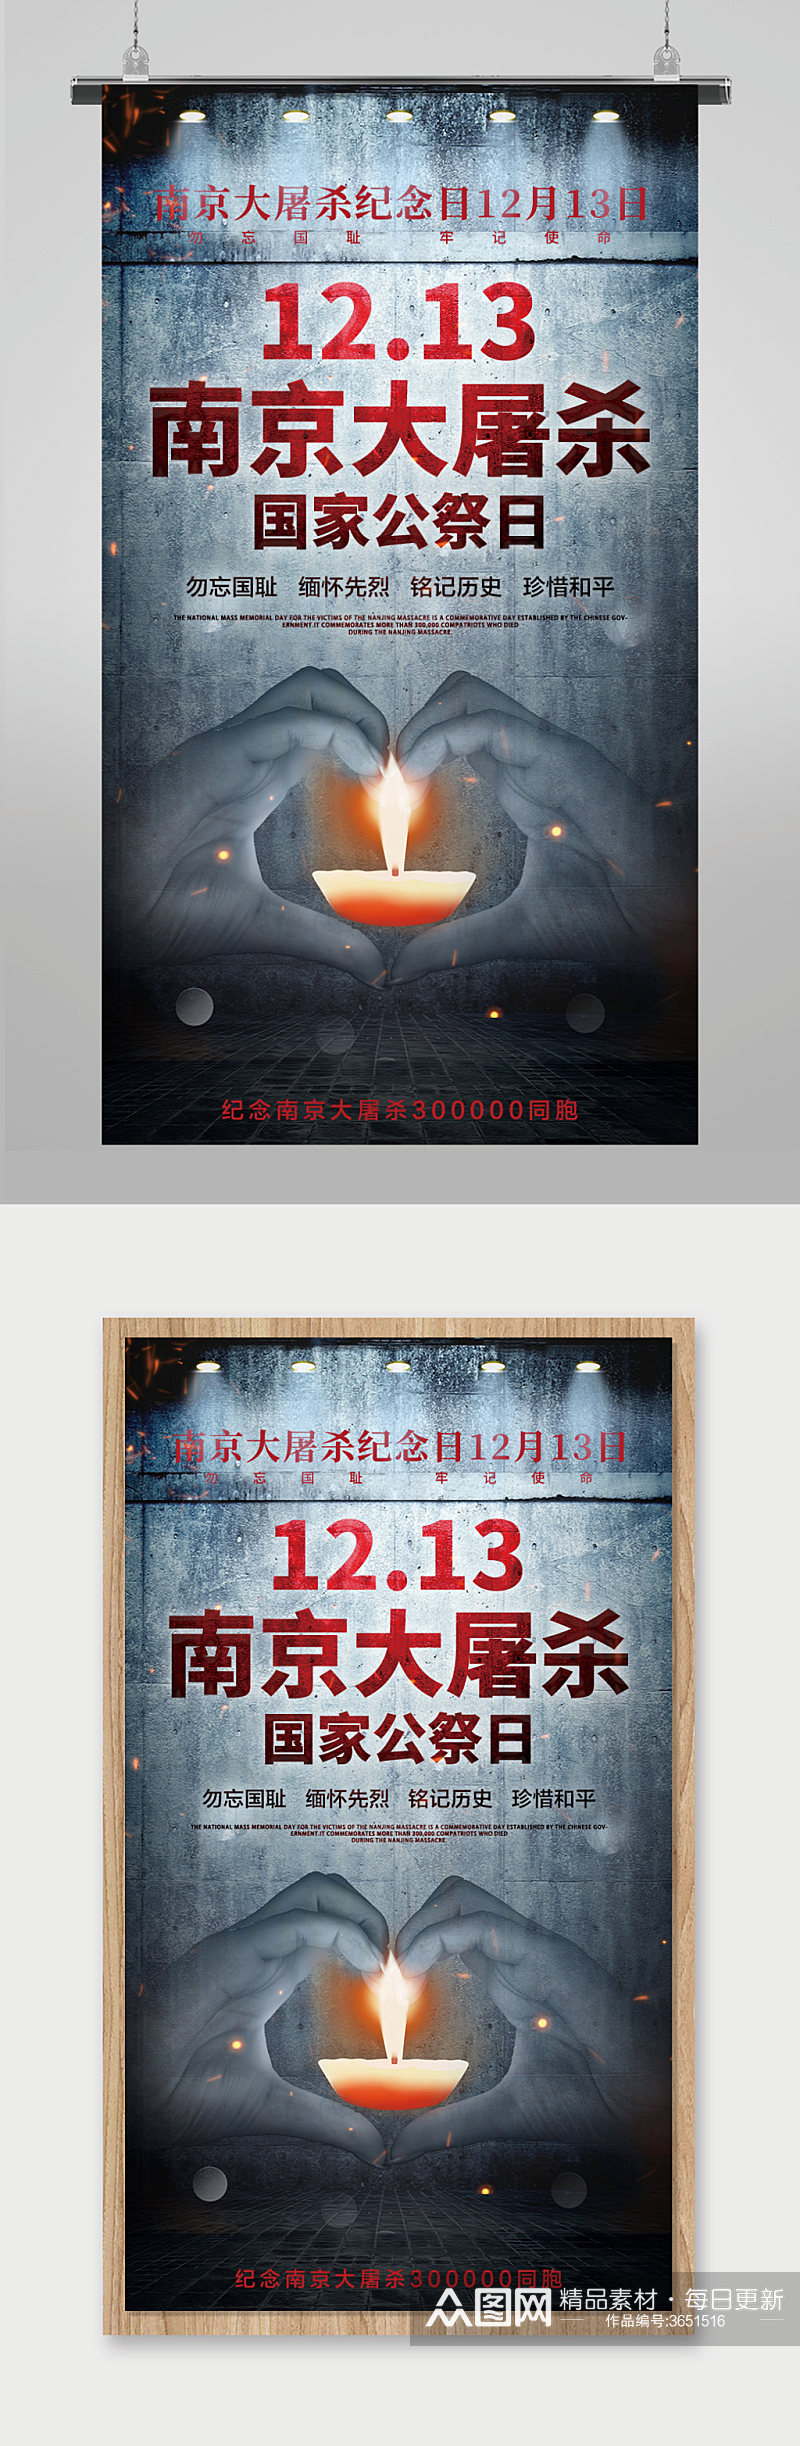 国家公祭日南京大屠杀纪念日海报素材